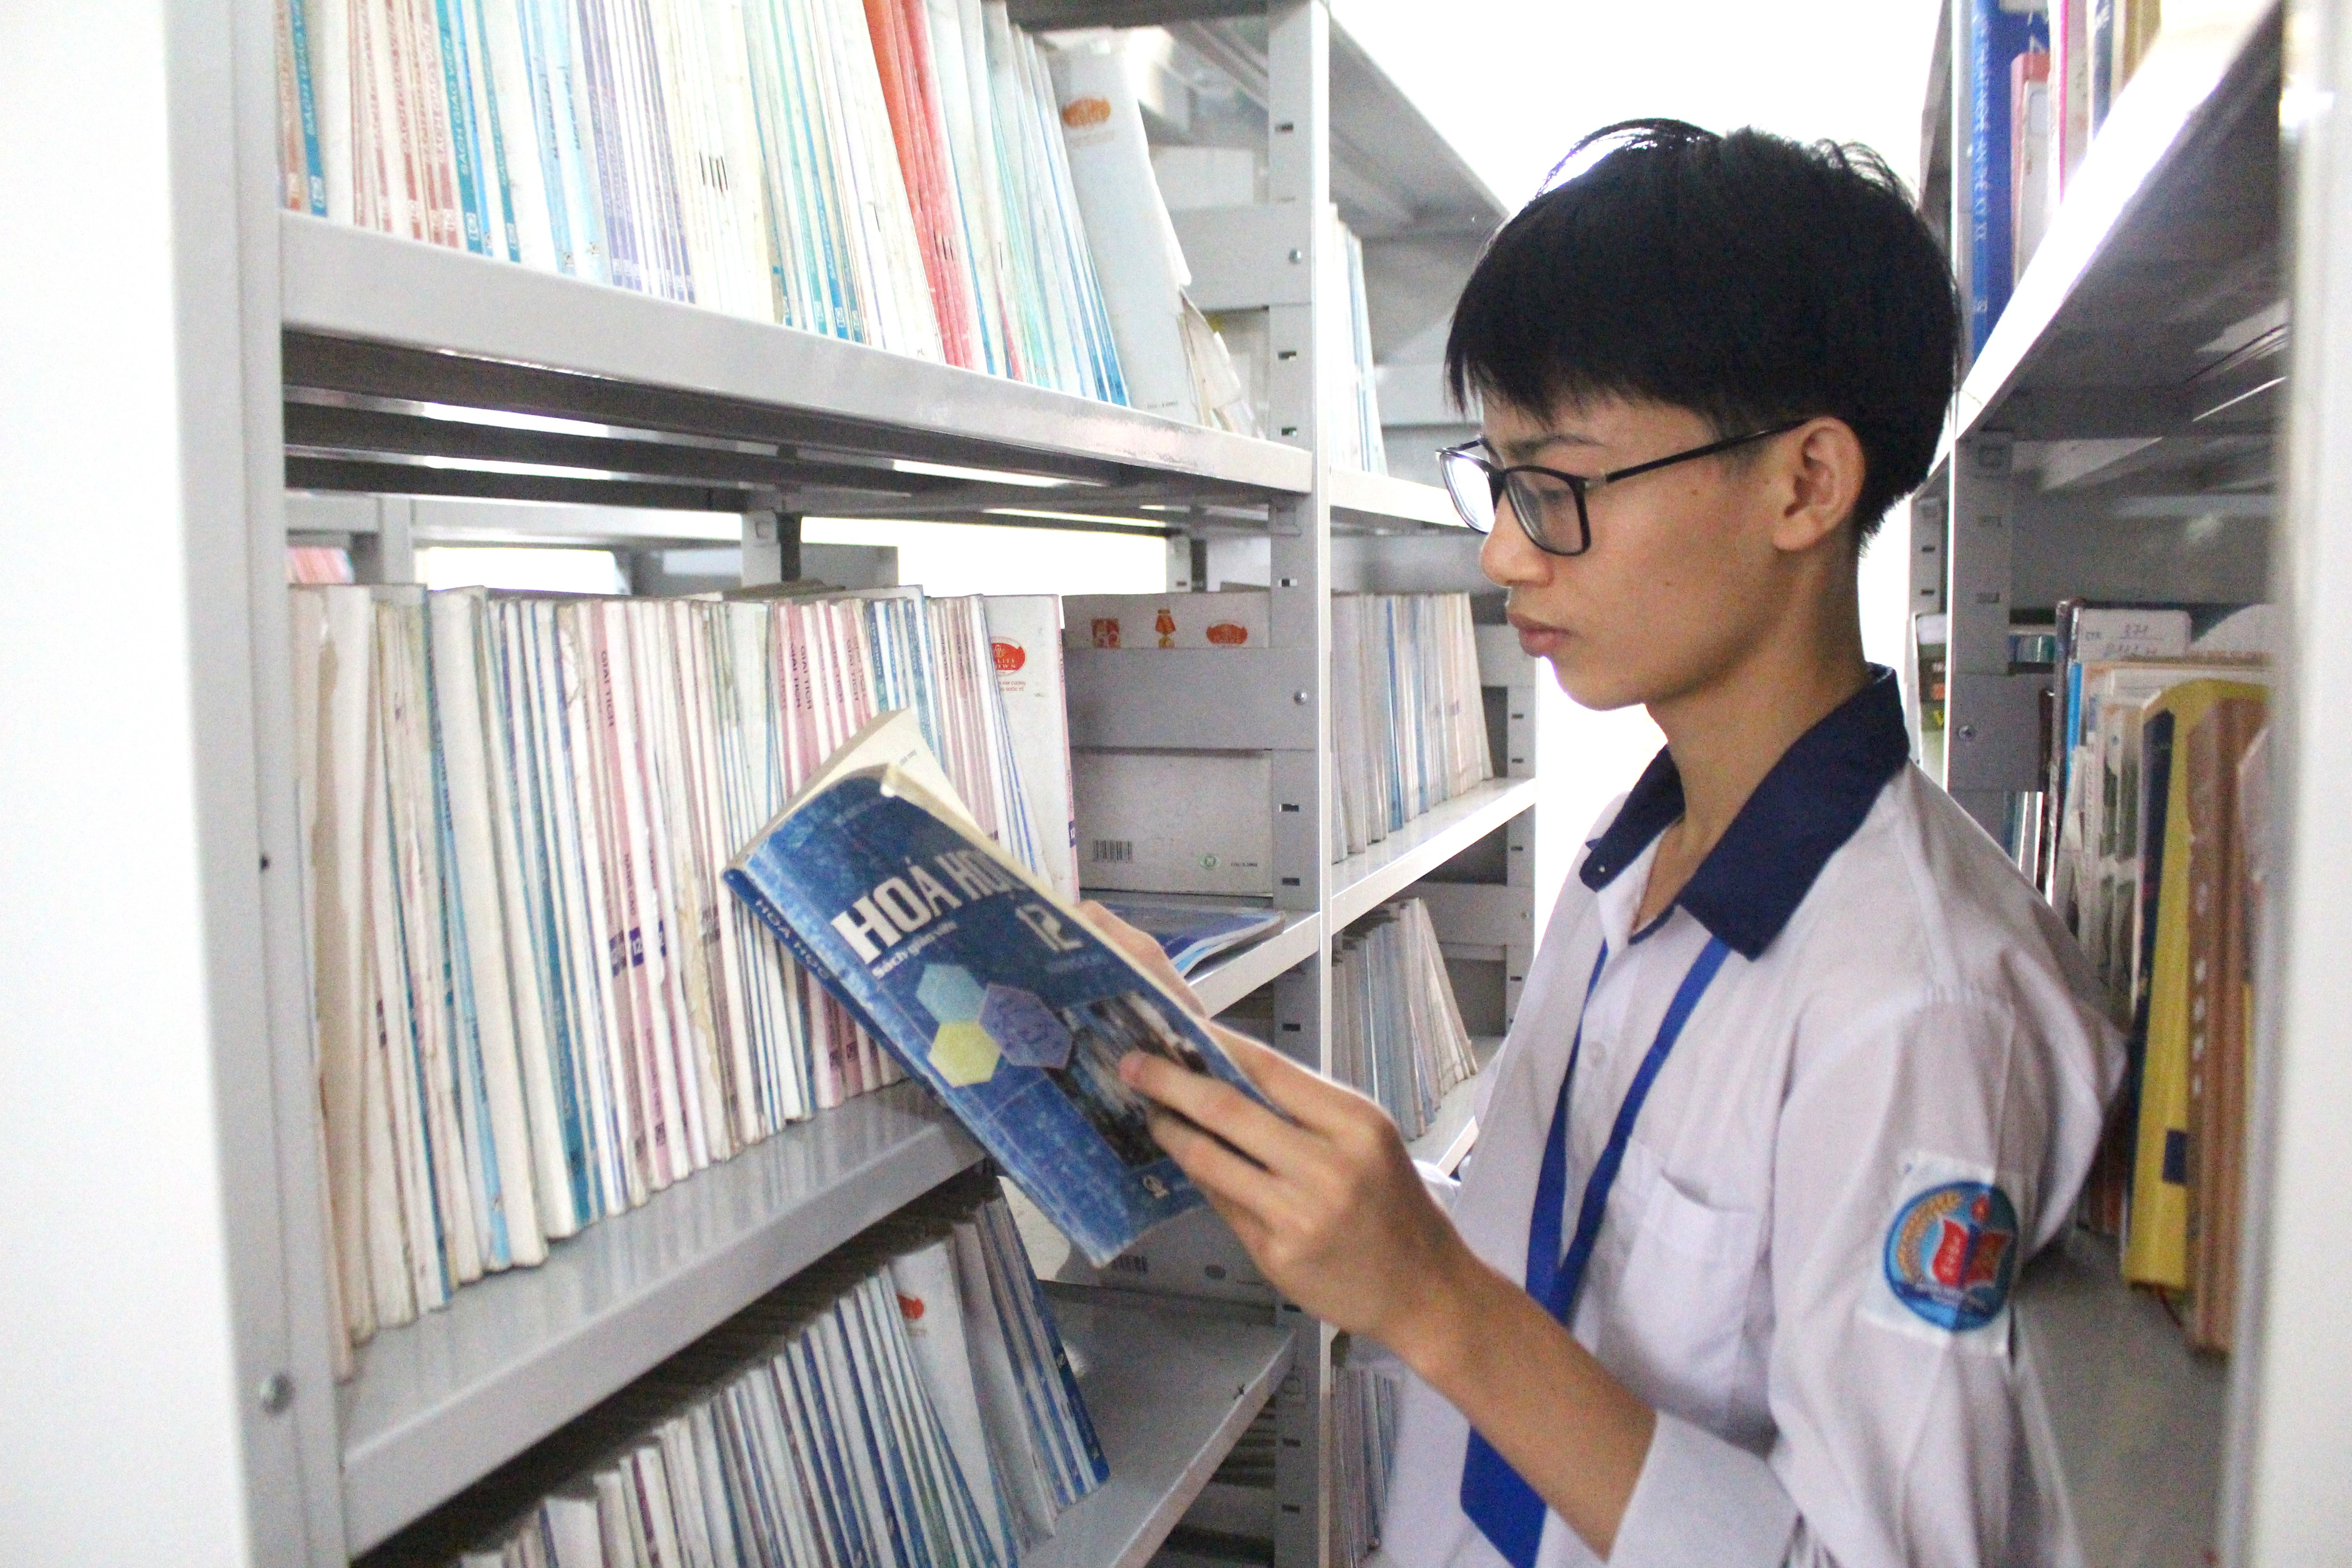 bna_Đình Ánh thường xuyên vào thư viện của trường đọc sách, trau dồi thêm nguồn kiến thức.JPG